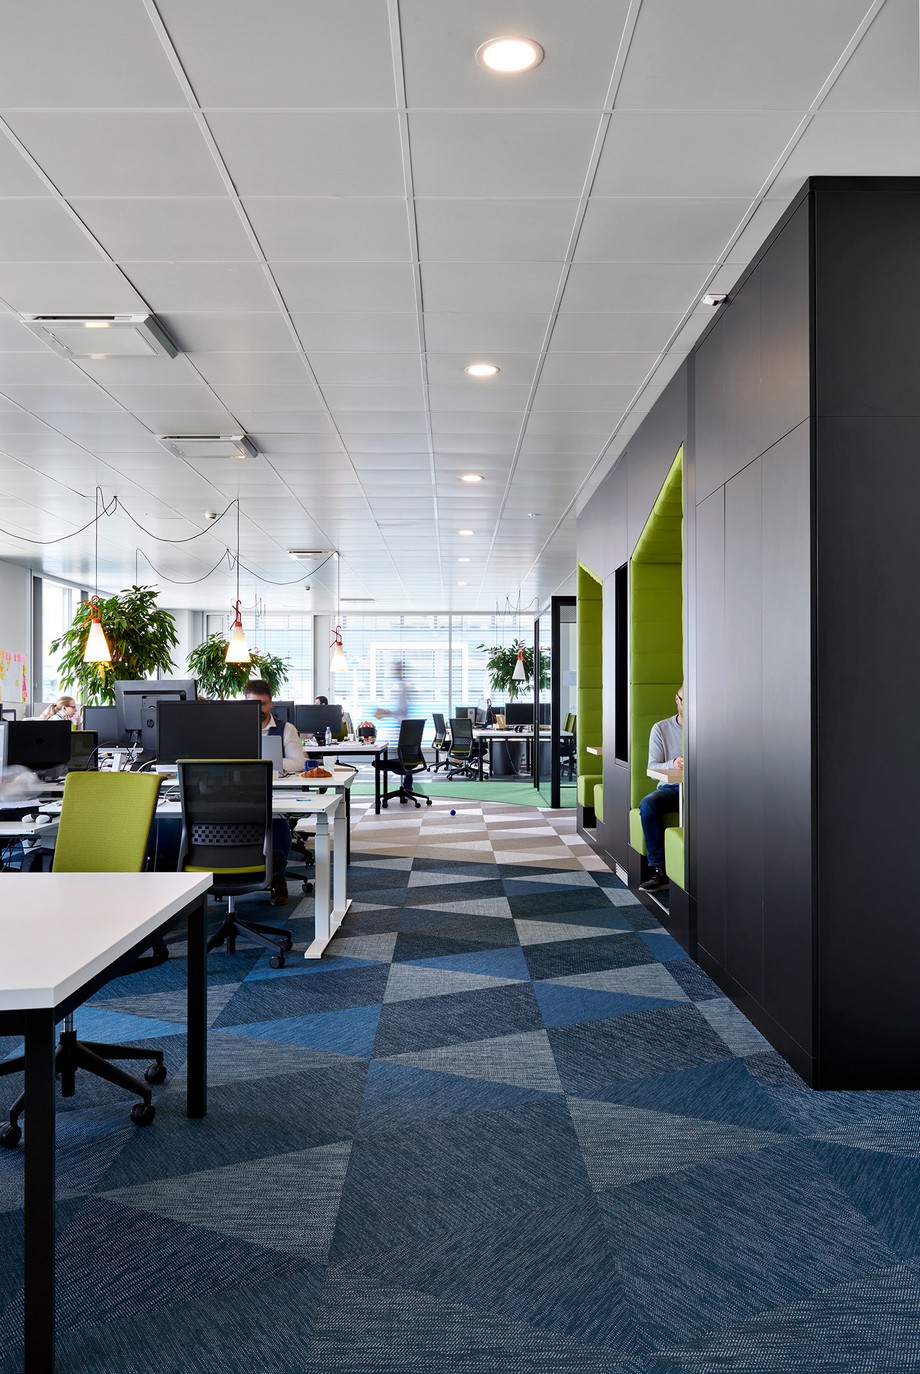 Mẫu thiết kế nội thất văn phòng đẹp tại Hải Phòng – Hiện đại và Sang trọng > TOP 15 mẫu thiết kế nội thất văn phòng ĐẸP - Hiện đại và Sang trọng